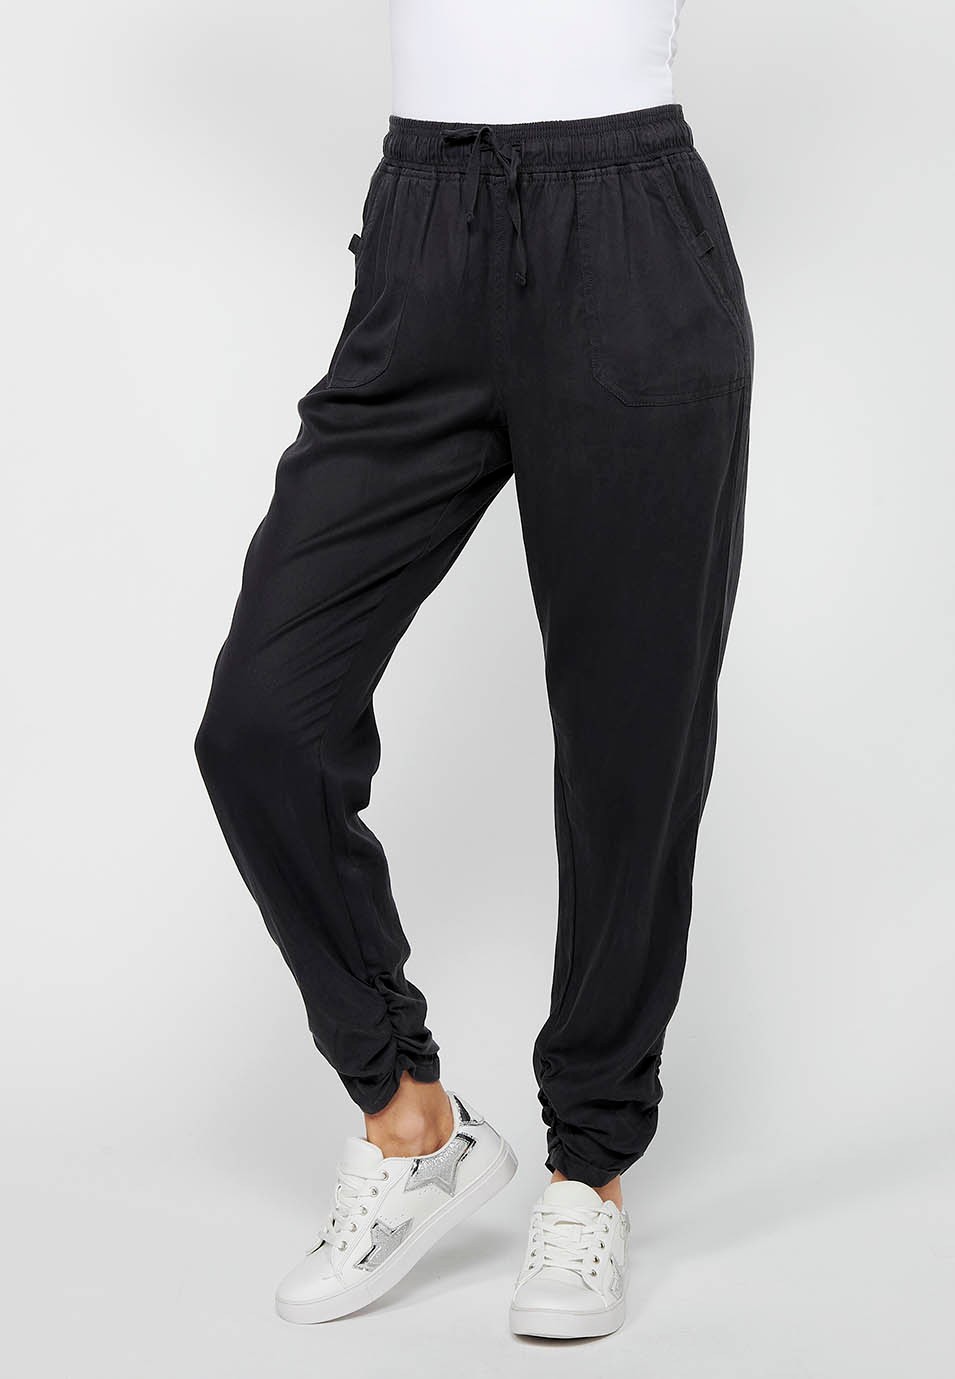 Pantalon de jogging long finition bouclée et taille caoutchoutée avec quatre poches dont deux à l'arrière avec rabat en Noir pour Femme 2